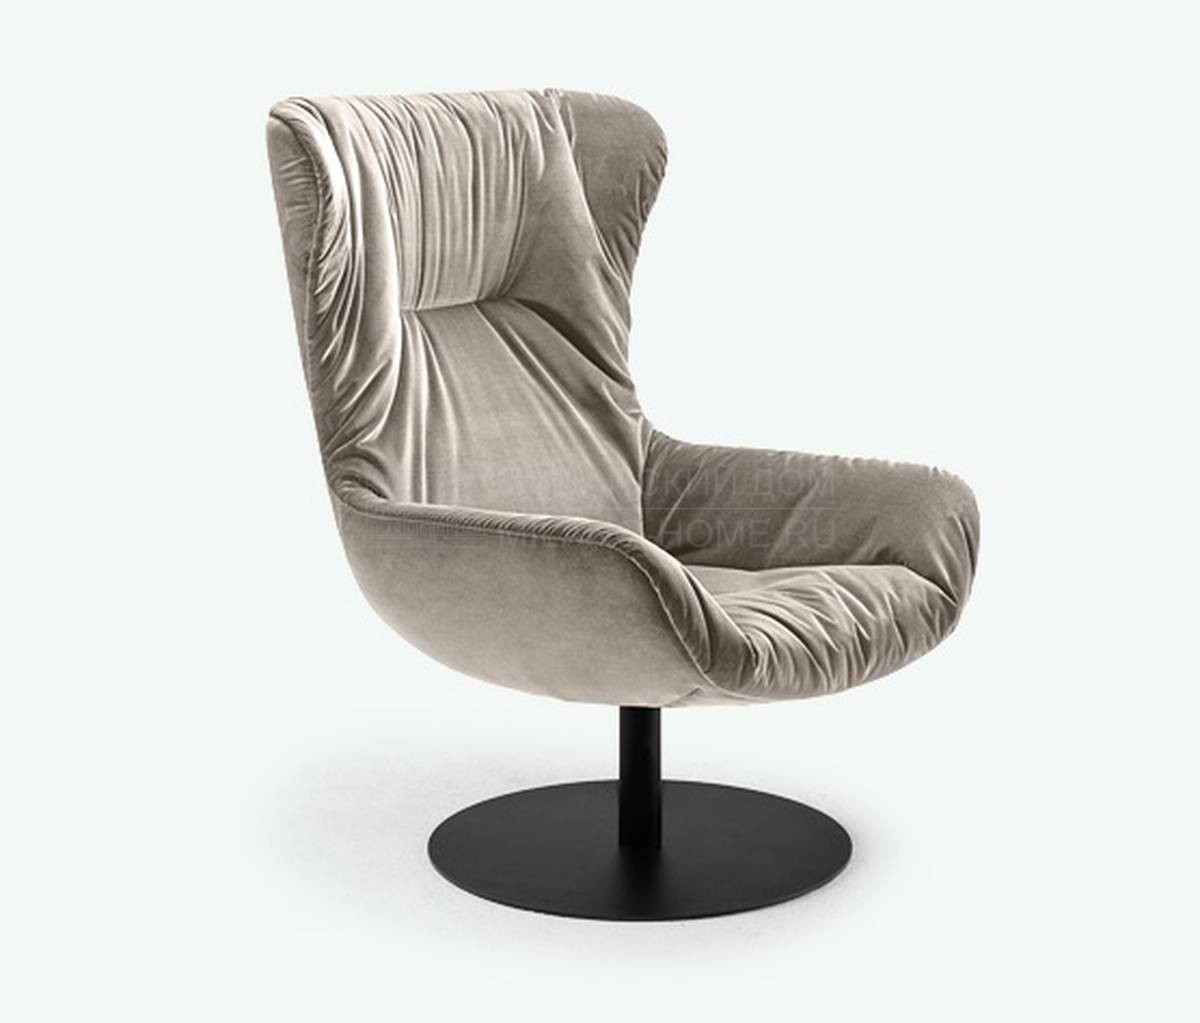 Каминное кресло Leya armchair mantel из Германии фабрики FREIFRAU